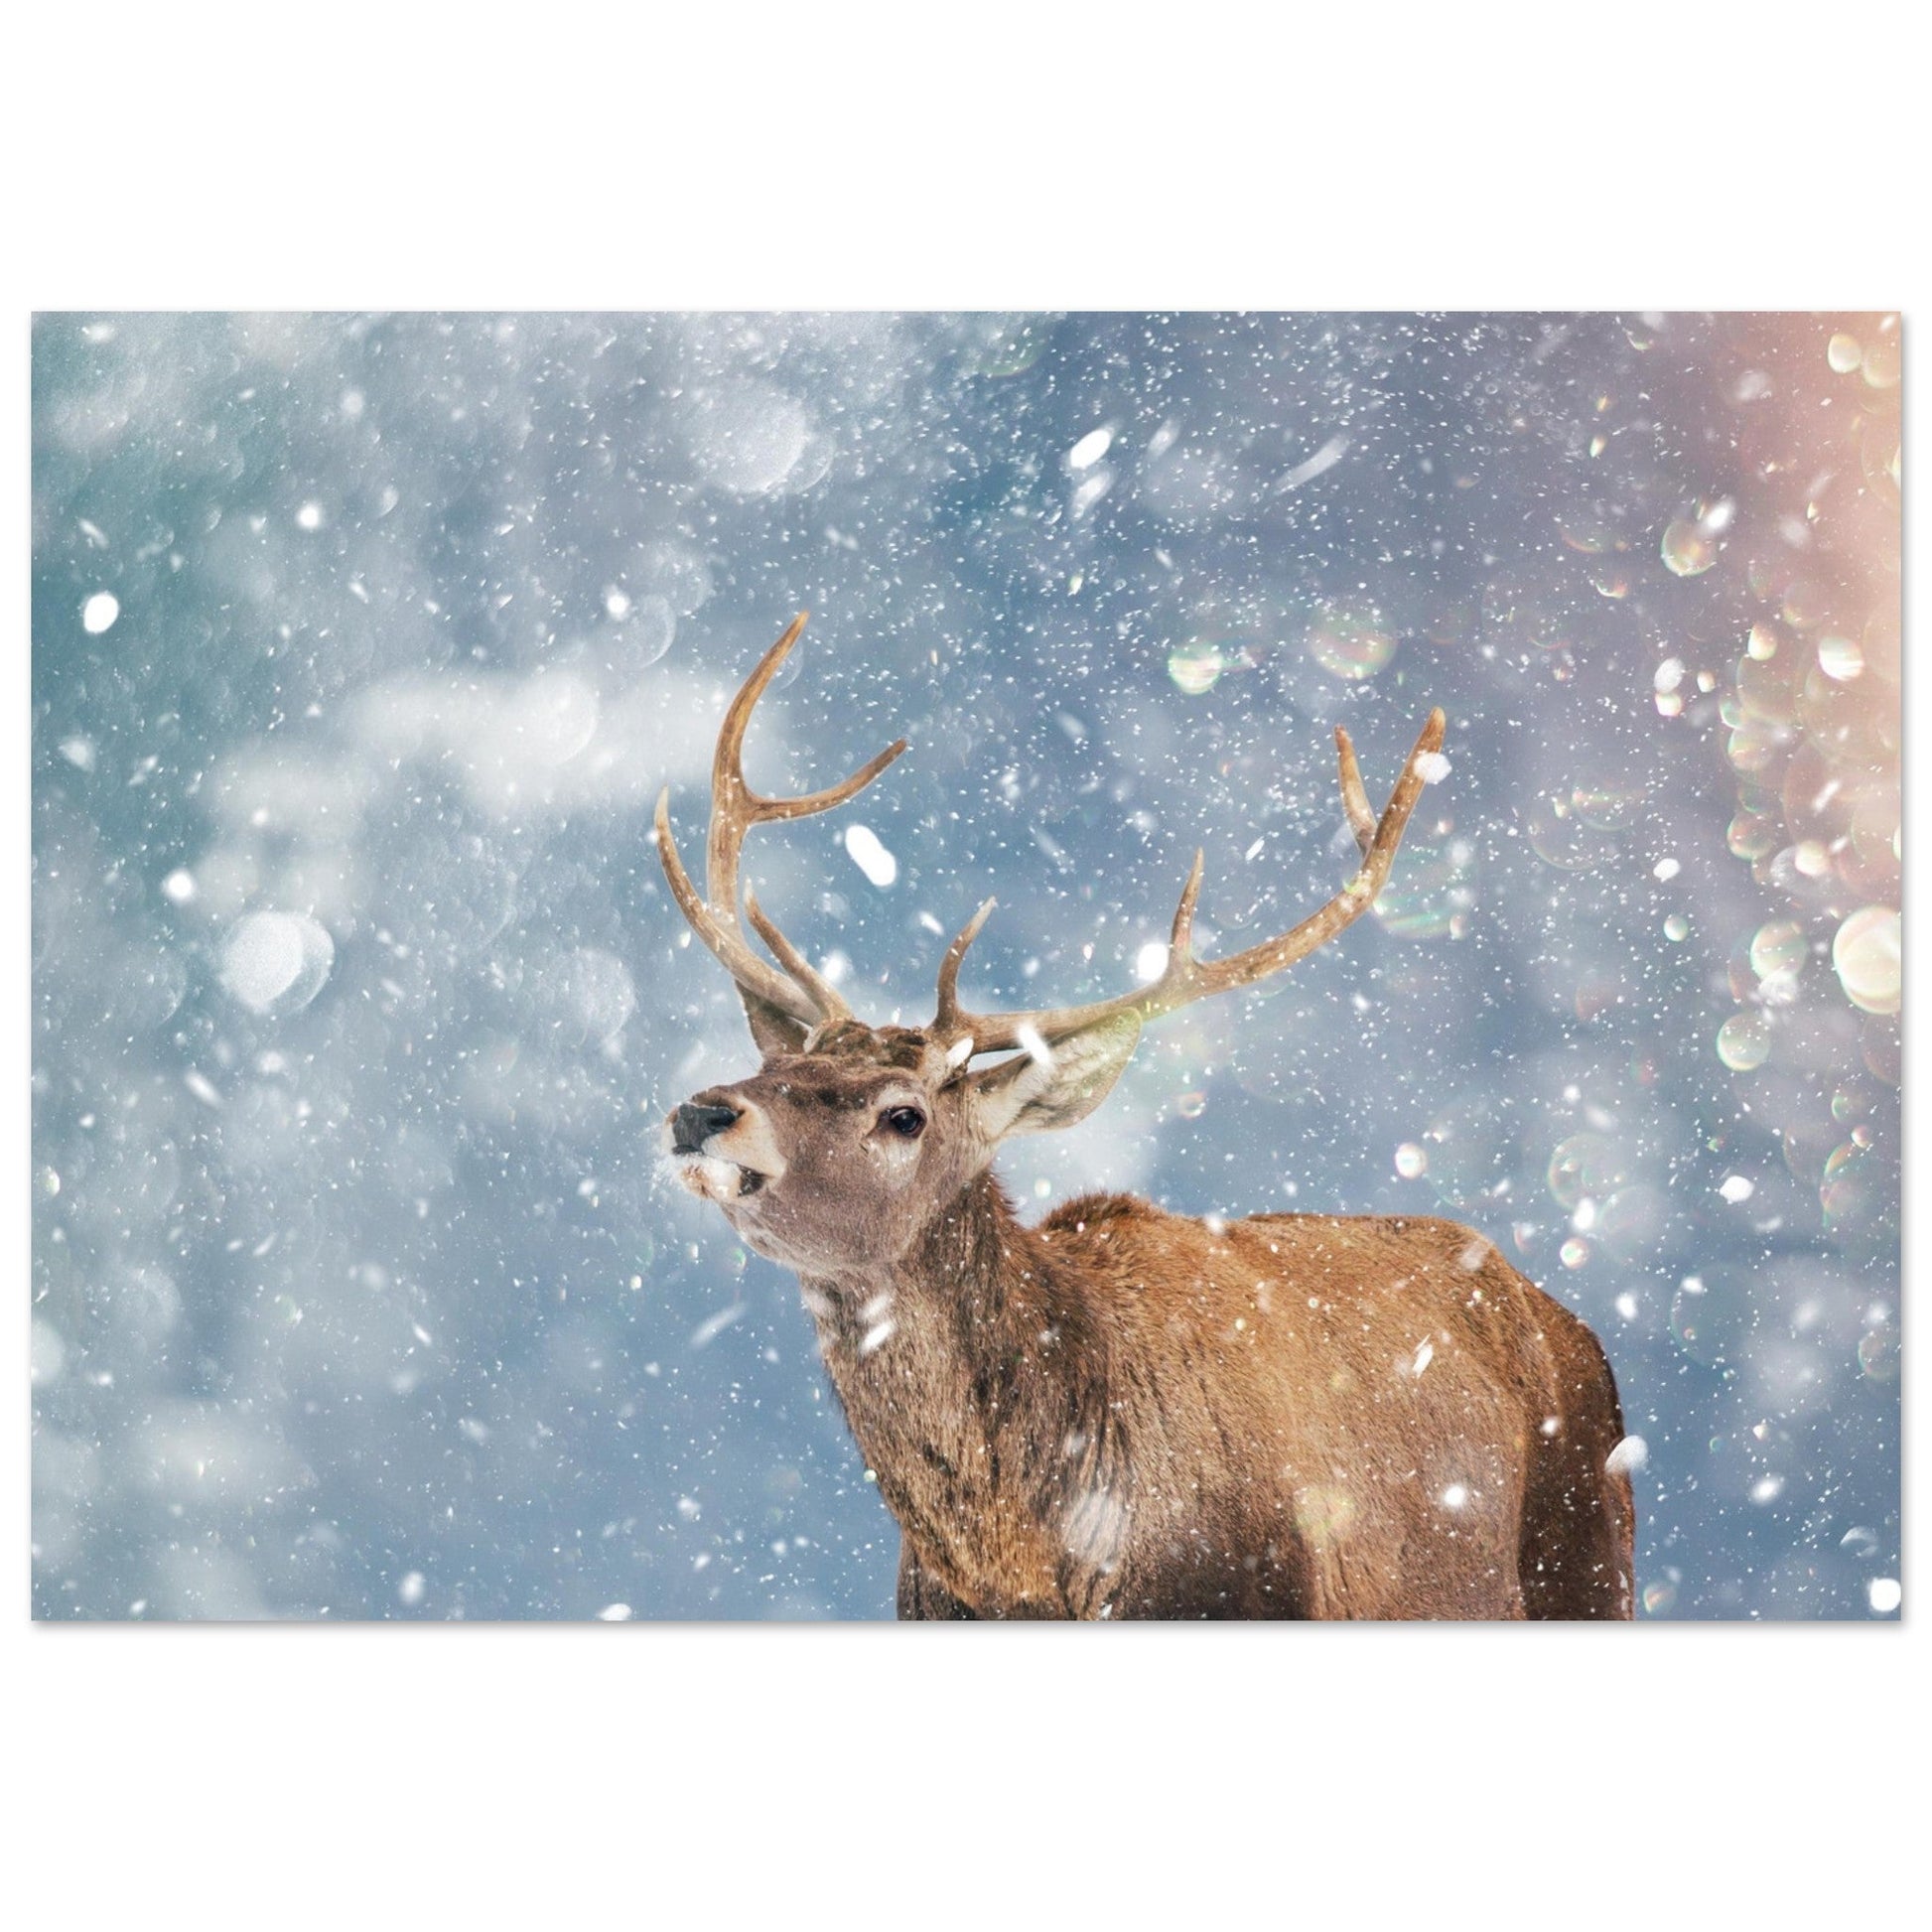 Vente Photo d'un cerf dans la neige #1 - Tableau photo paysage